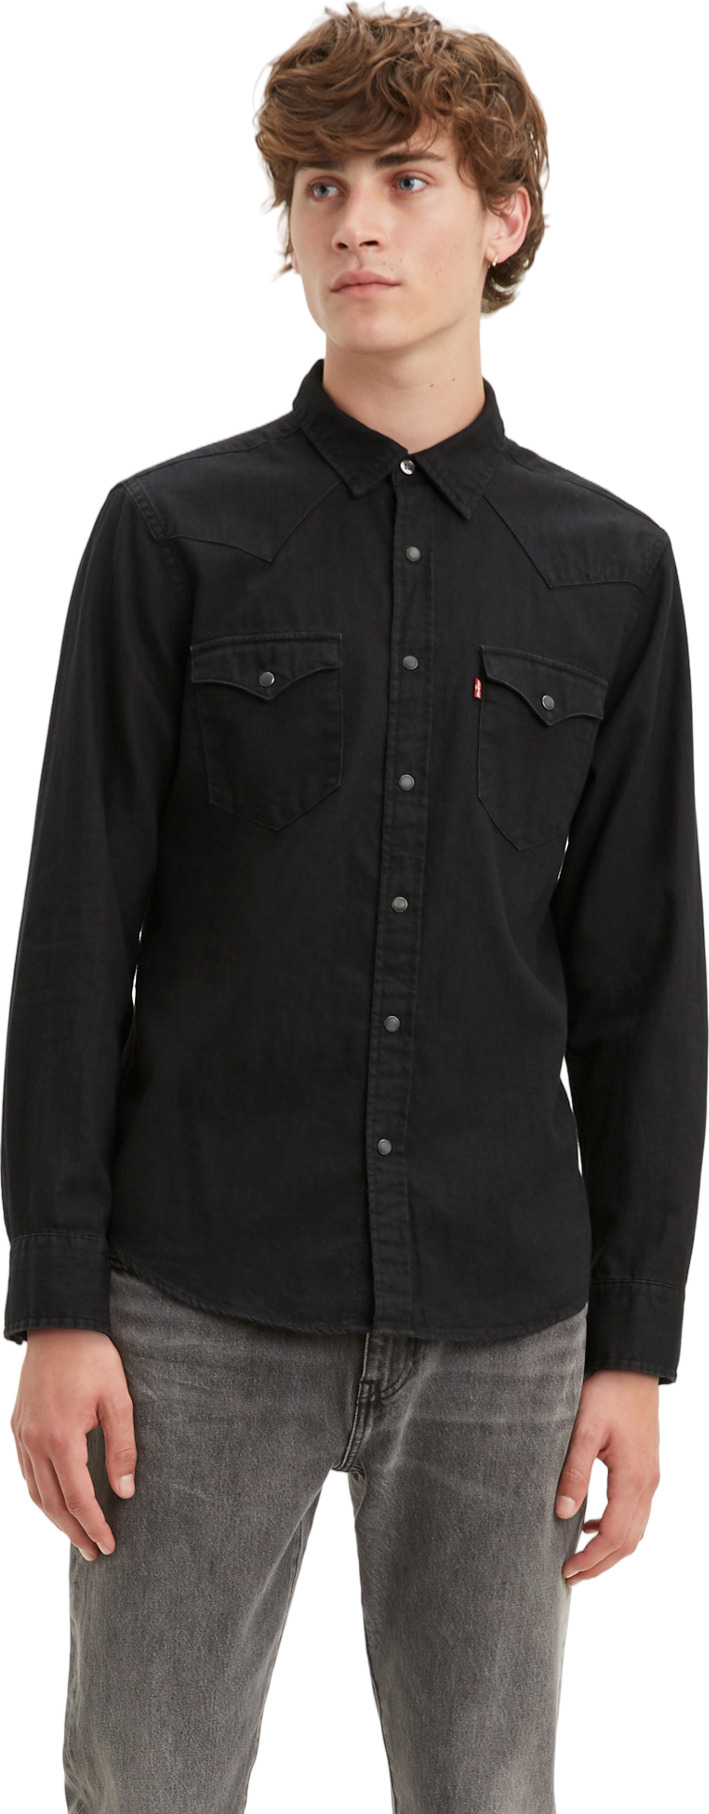 Джинсовая рубашка мужская Levi's Men Classic Western Shirt черная S